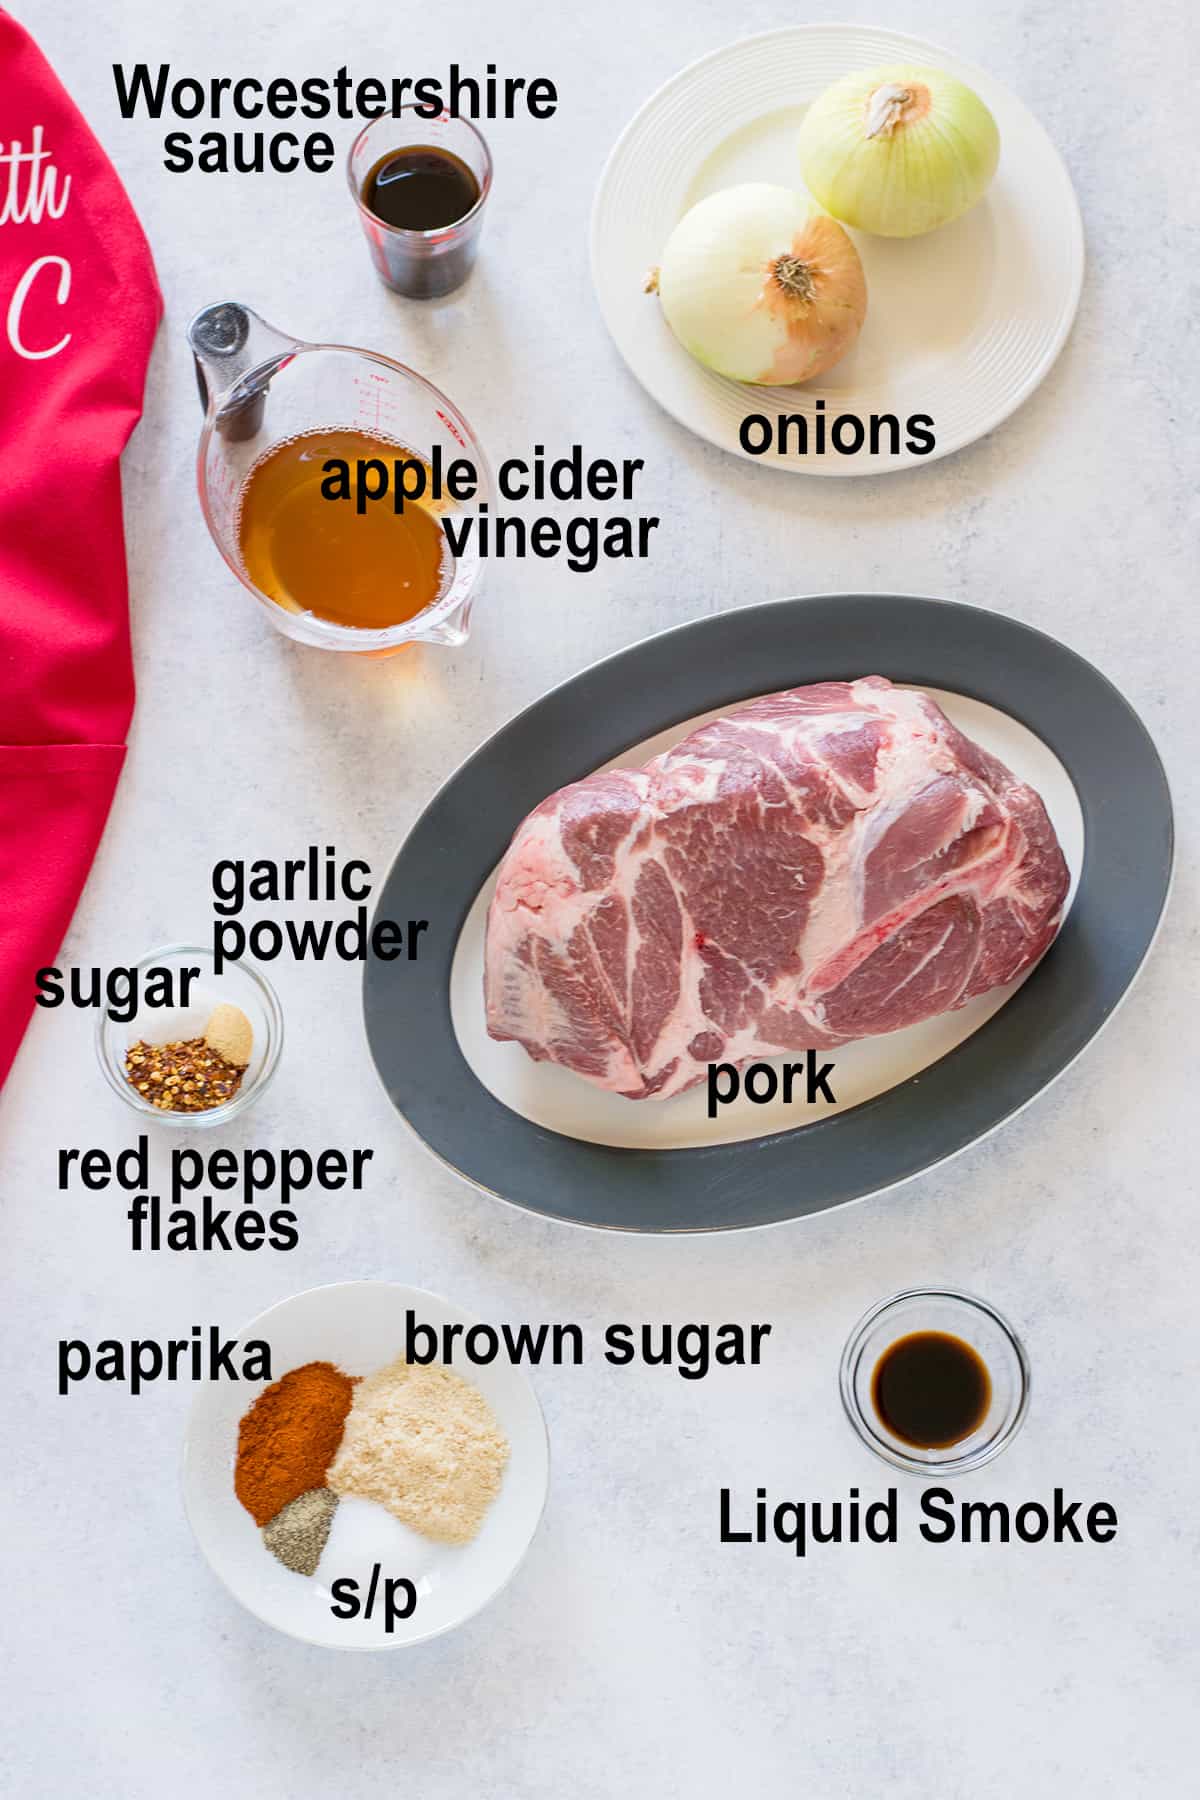 raw pork shoulder, onions, seasoning, vinegar, liquid ingredients